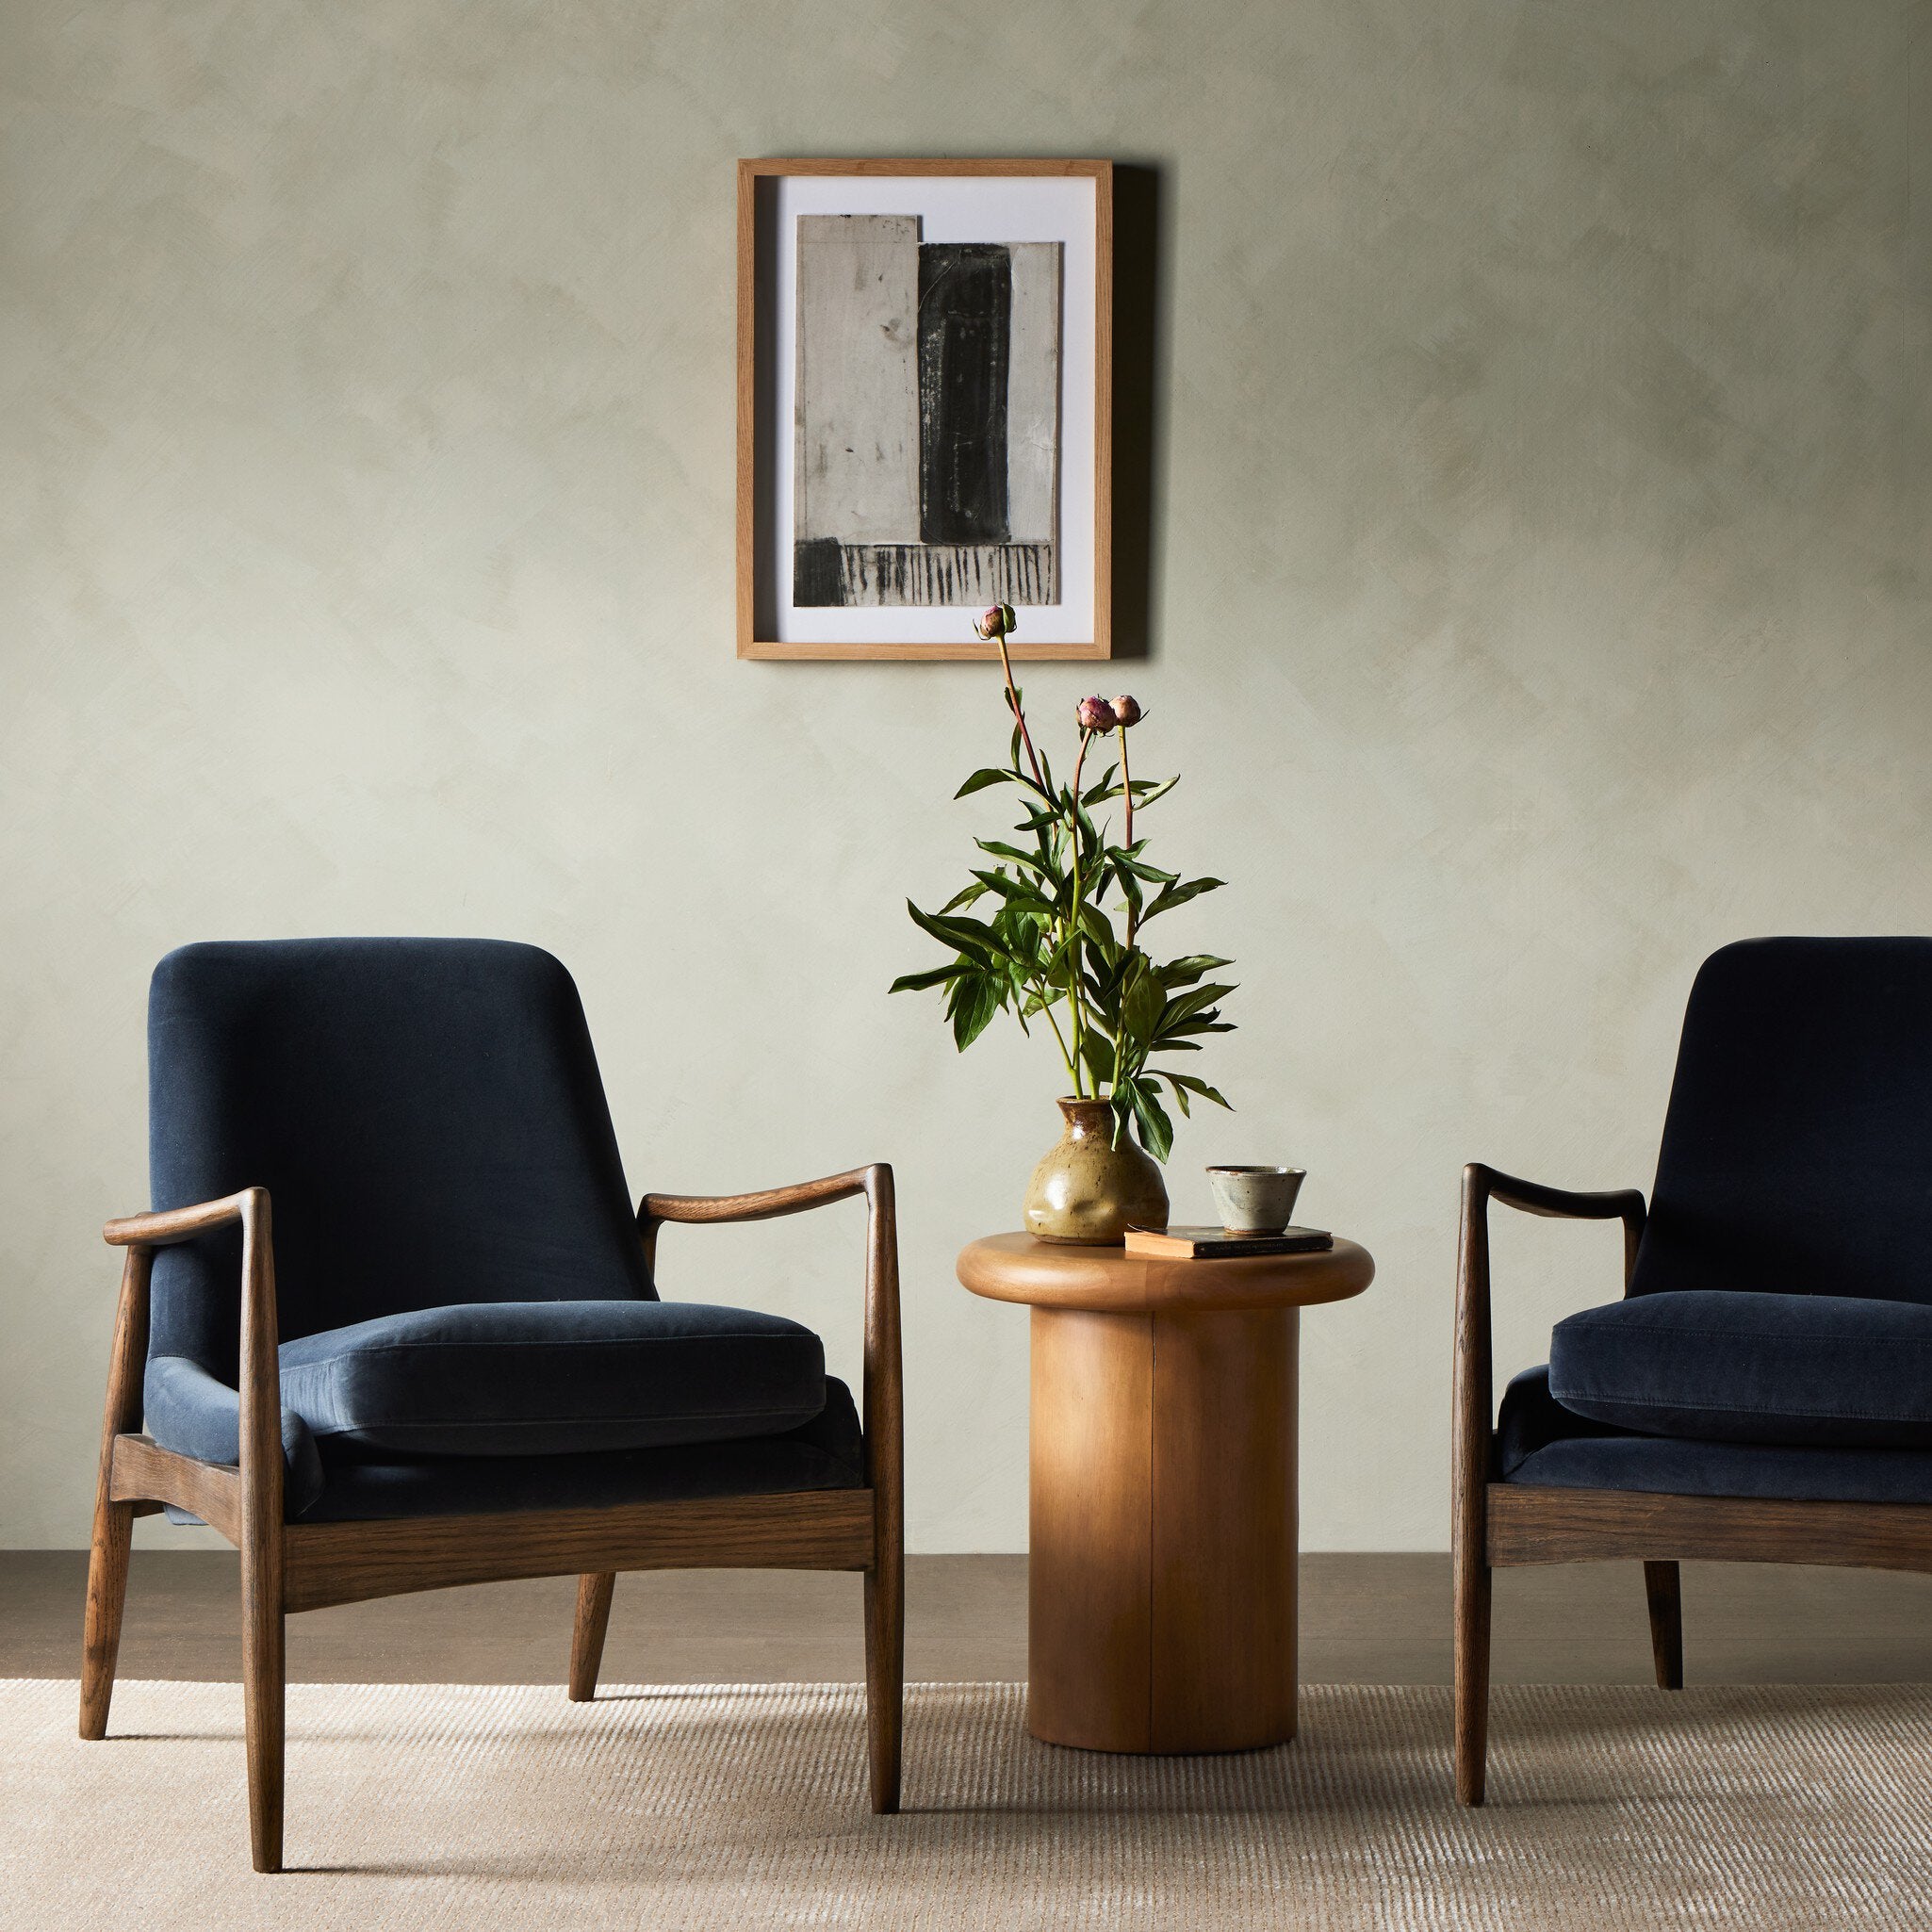 Braden Chair - Modern Velvet Shadow